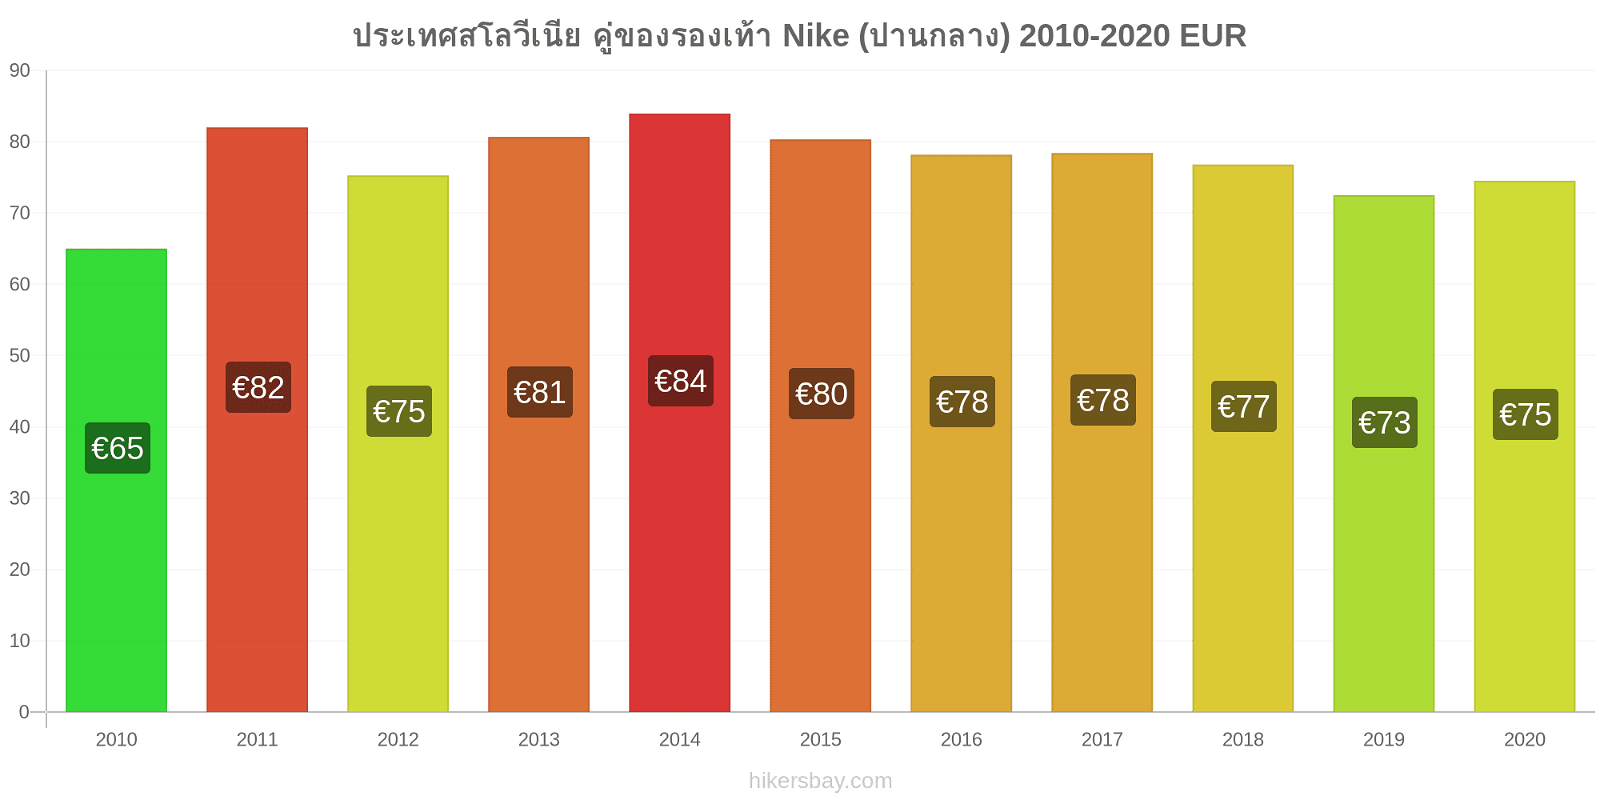 ประเทศสโลวีเนีย การเปลี่ยนแปลงราคา คู่ของรองเท้า Nike (ปานกลาง) hikersbay.com